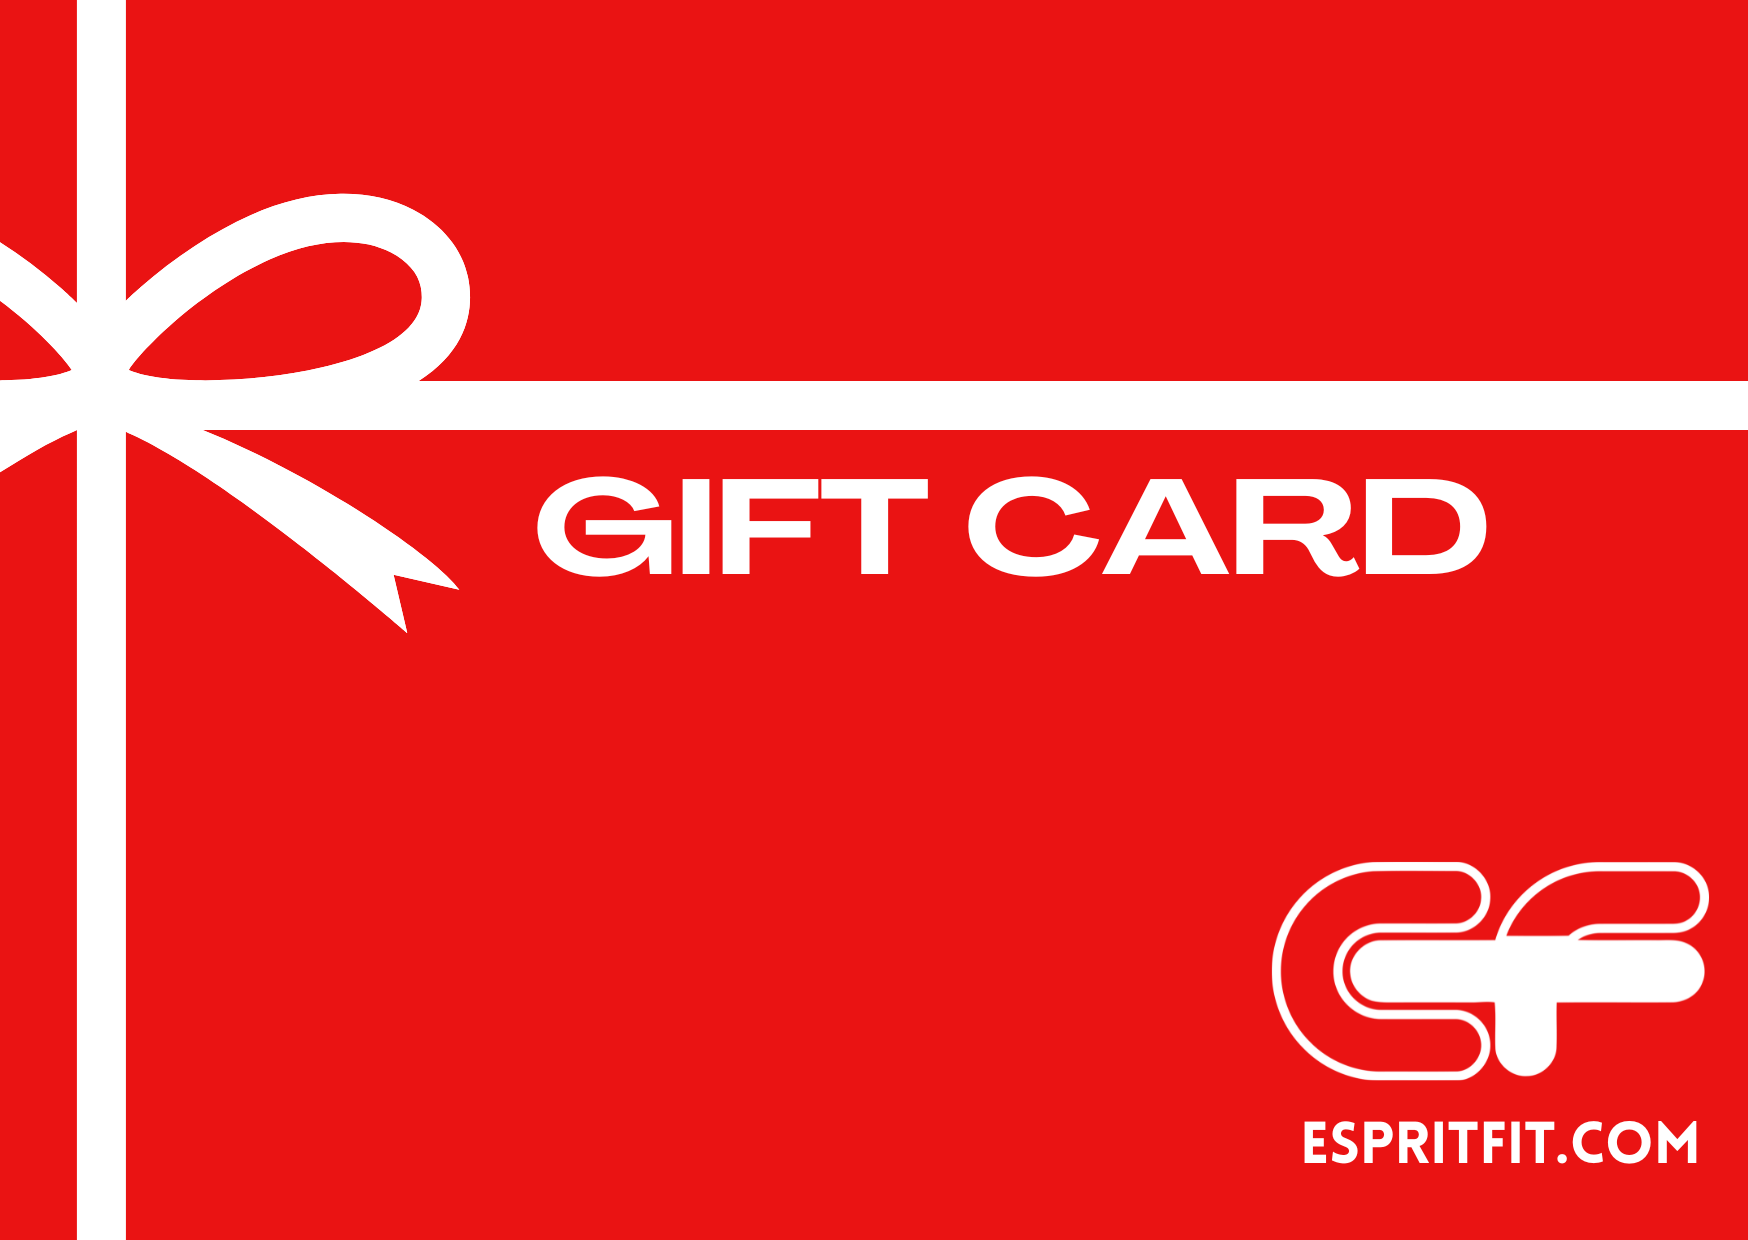 Espritfit Gift Card - Espritfit